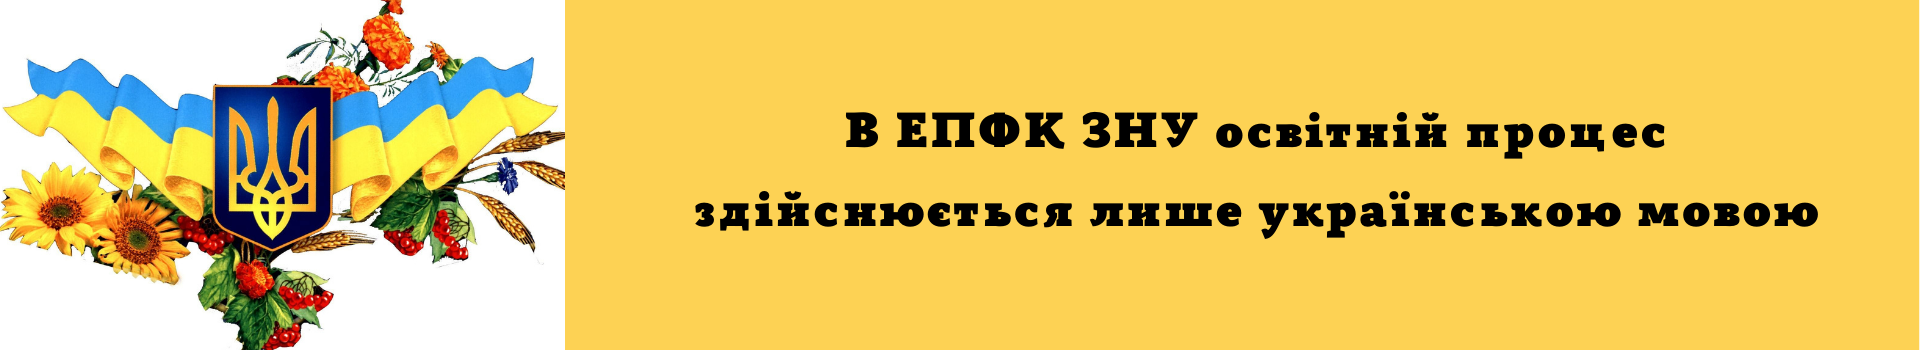 В ЕПФК ЗНУ освітній процес здійснюється лише українською мовою (1)